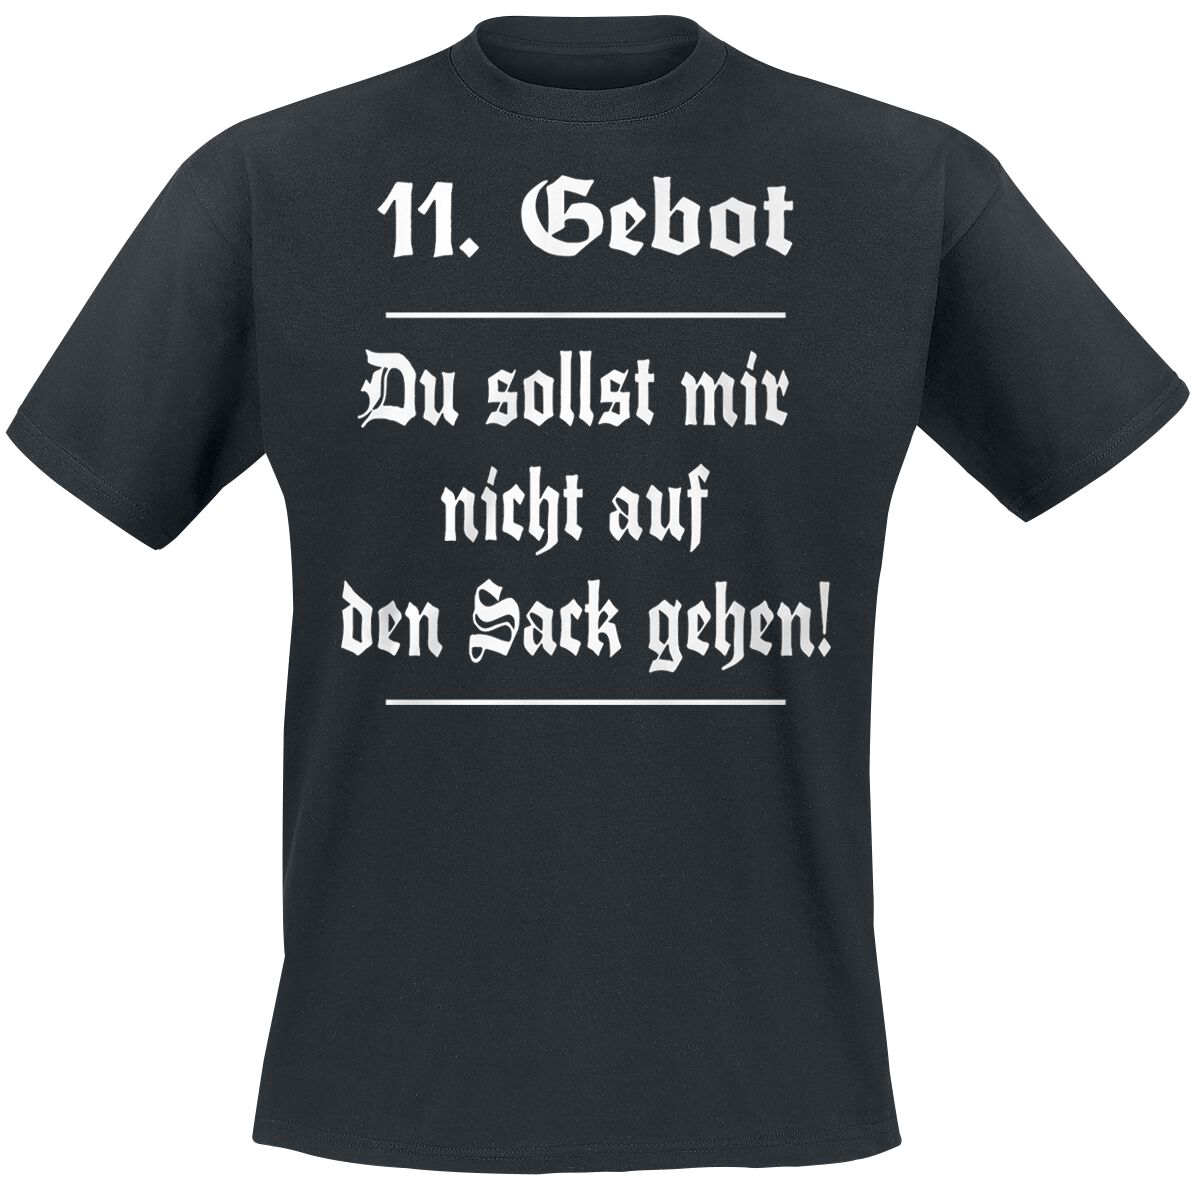 Sprüche T-Shirt - 11. Gebot - S bis 5XL - für Männer - Größe 3XL - schwarz